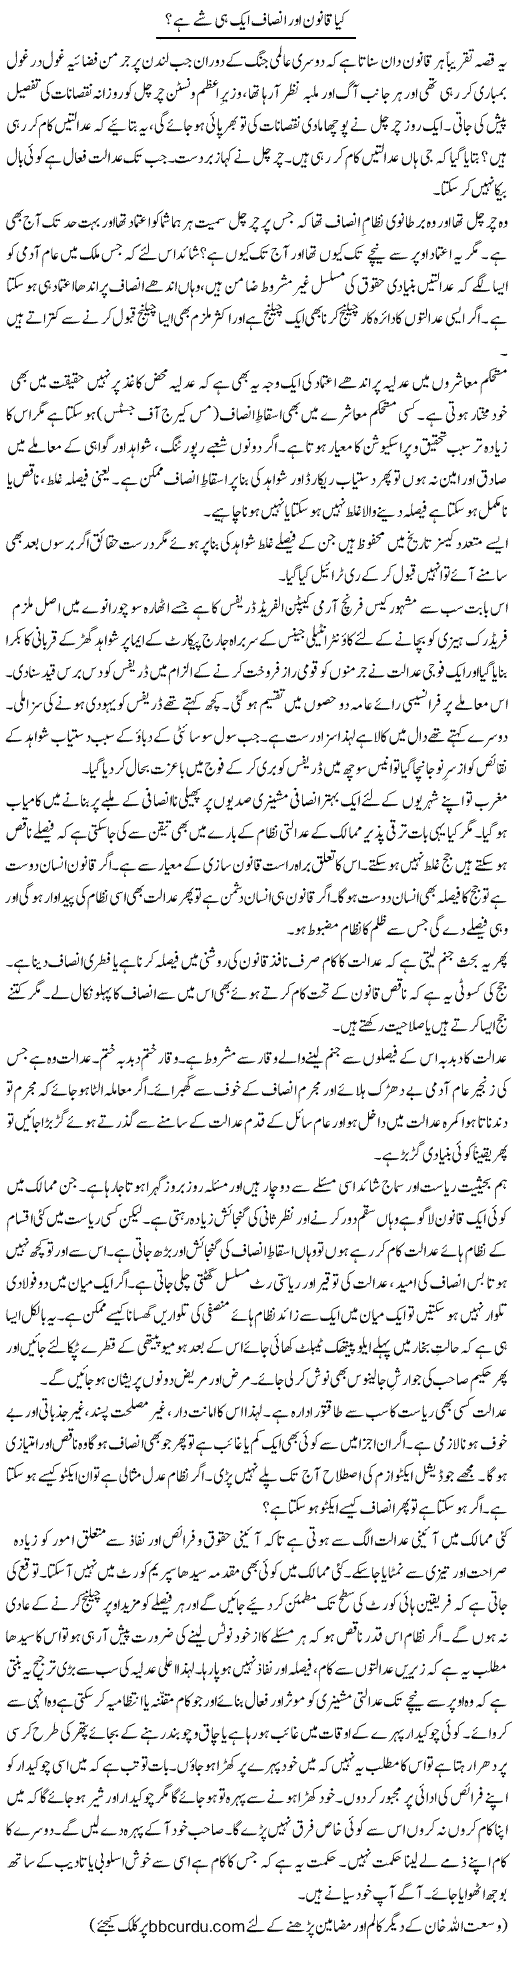 Kya Qanoon Aur Insaf Aik Hi Shai Hai? | Wusat Ullah Khan | Daily Urdu Columns